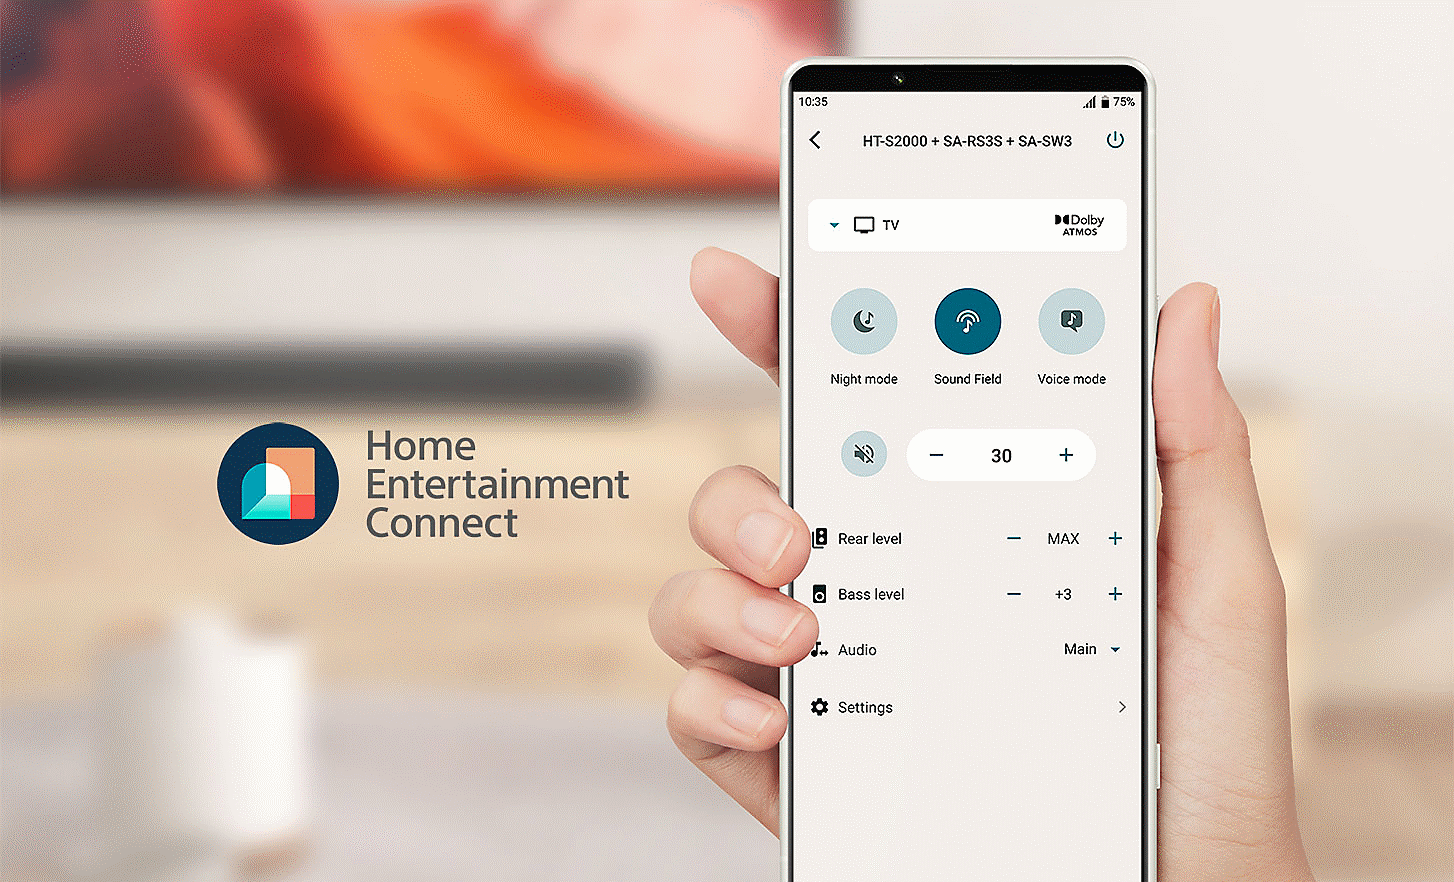 תמונה של יד מחזיקה טלפון נייד שמציג תפריט הגדרות, לוגו של Home Entertainment Connect מופיע בצד שמאל